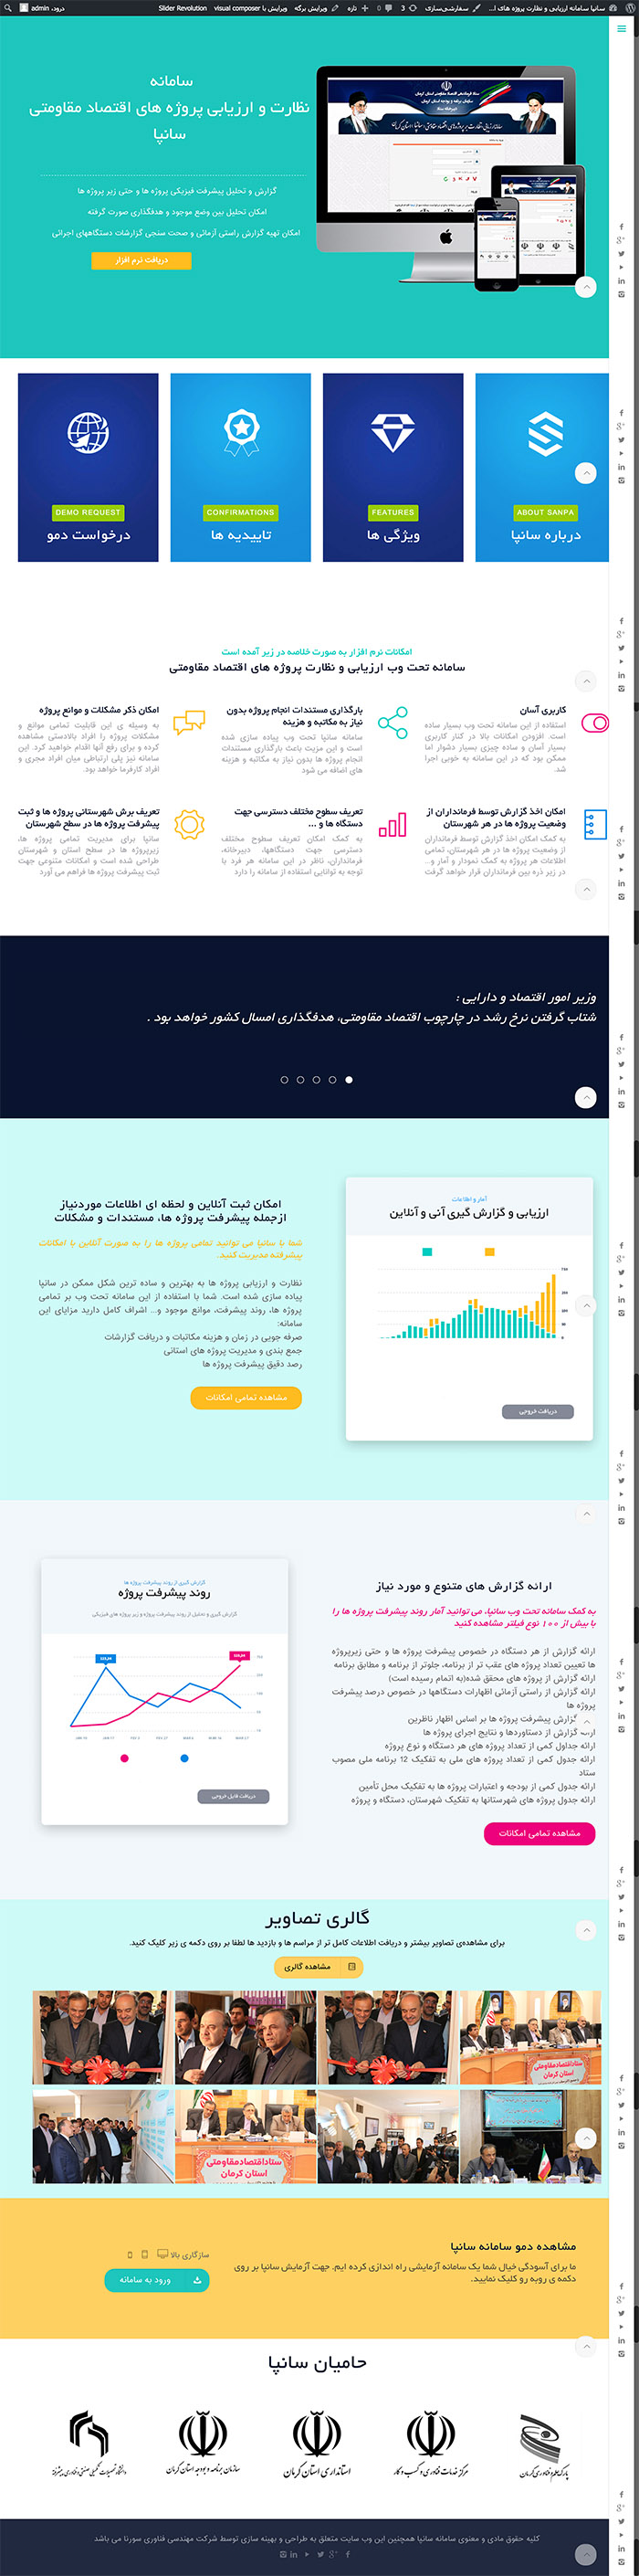 طراحی سایت سامانه نظارت و ارزیابی بر پروژه های اقتصاد مقاومتی توسط شرکت طراحی سایت در کرمان